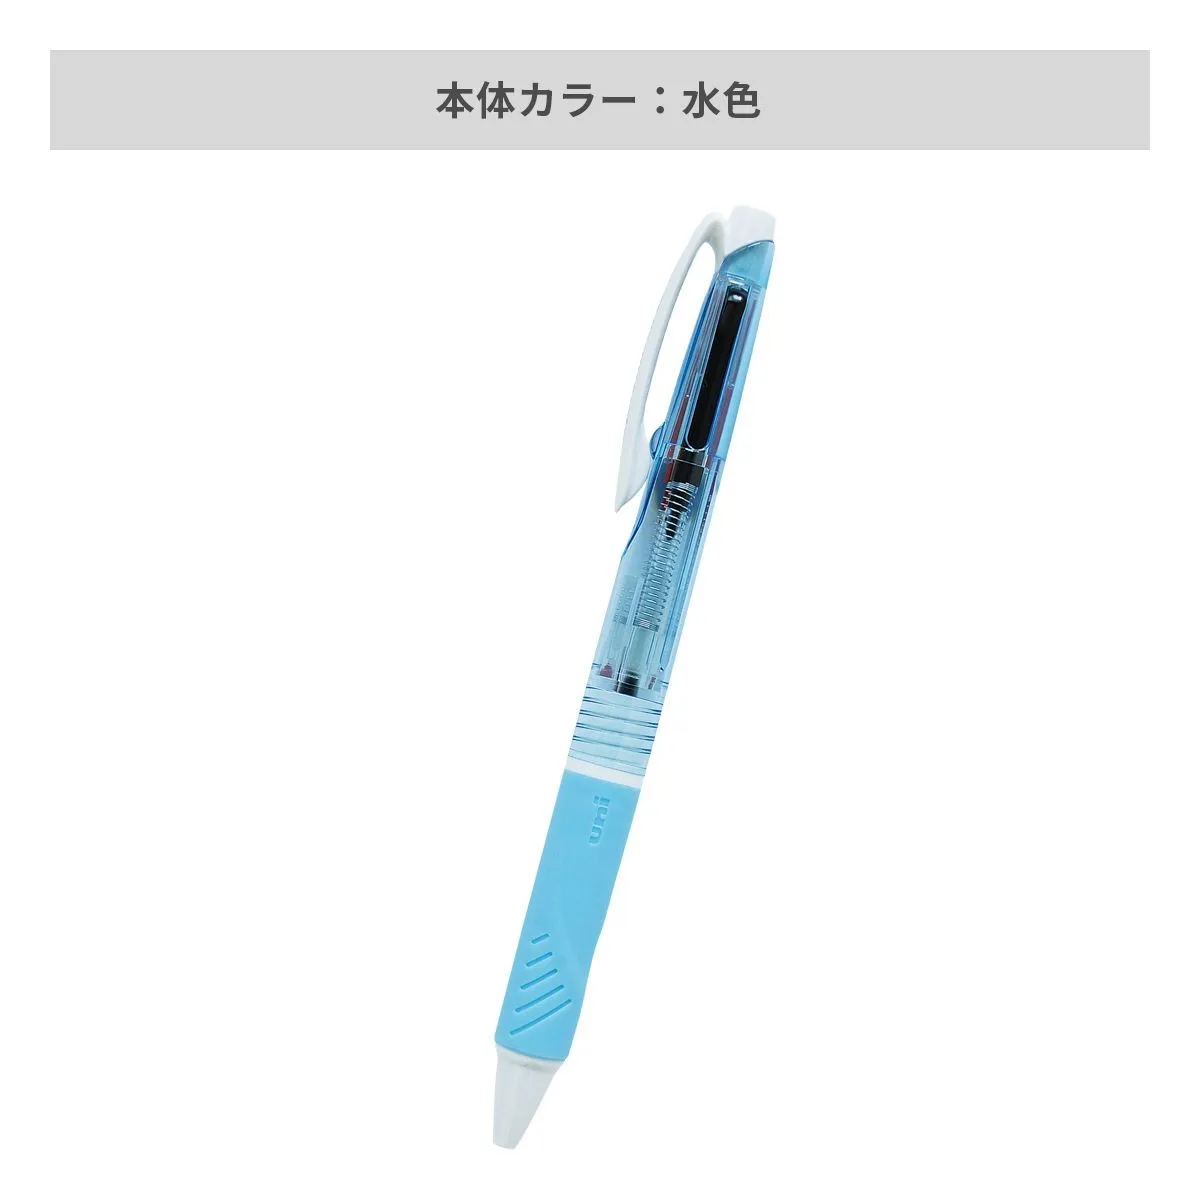 三菱鉛筆 ジェットストリーム 2色ボールペン 0.7mm 【名入れボールペン / パッド印刷】